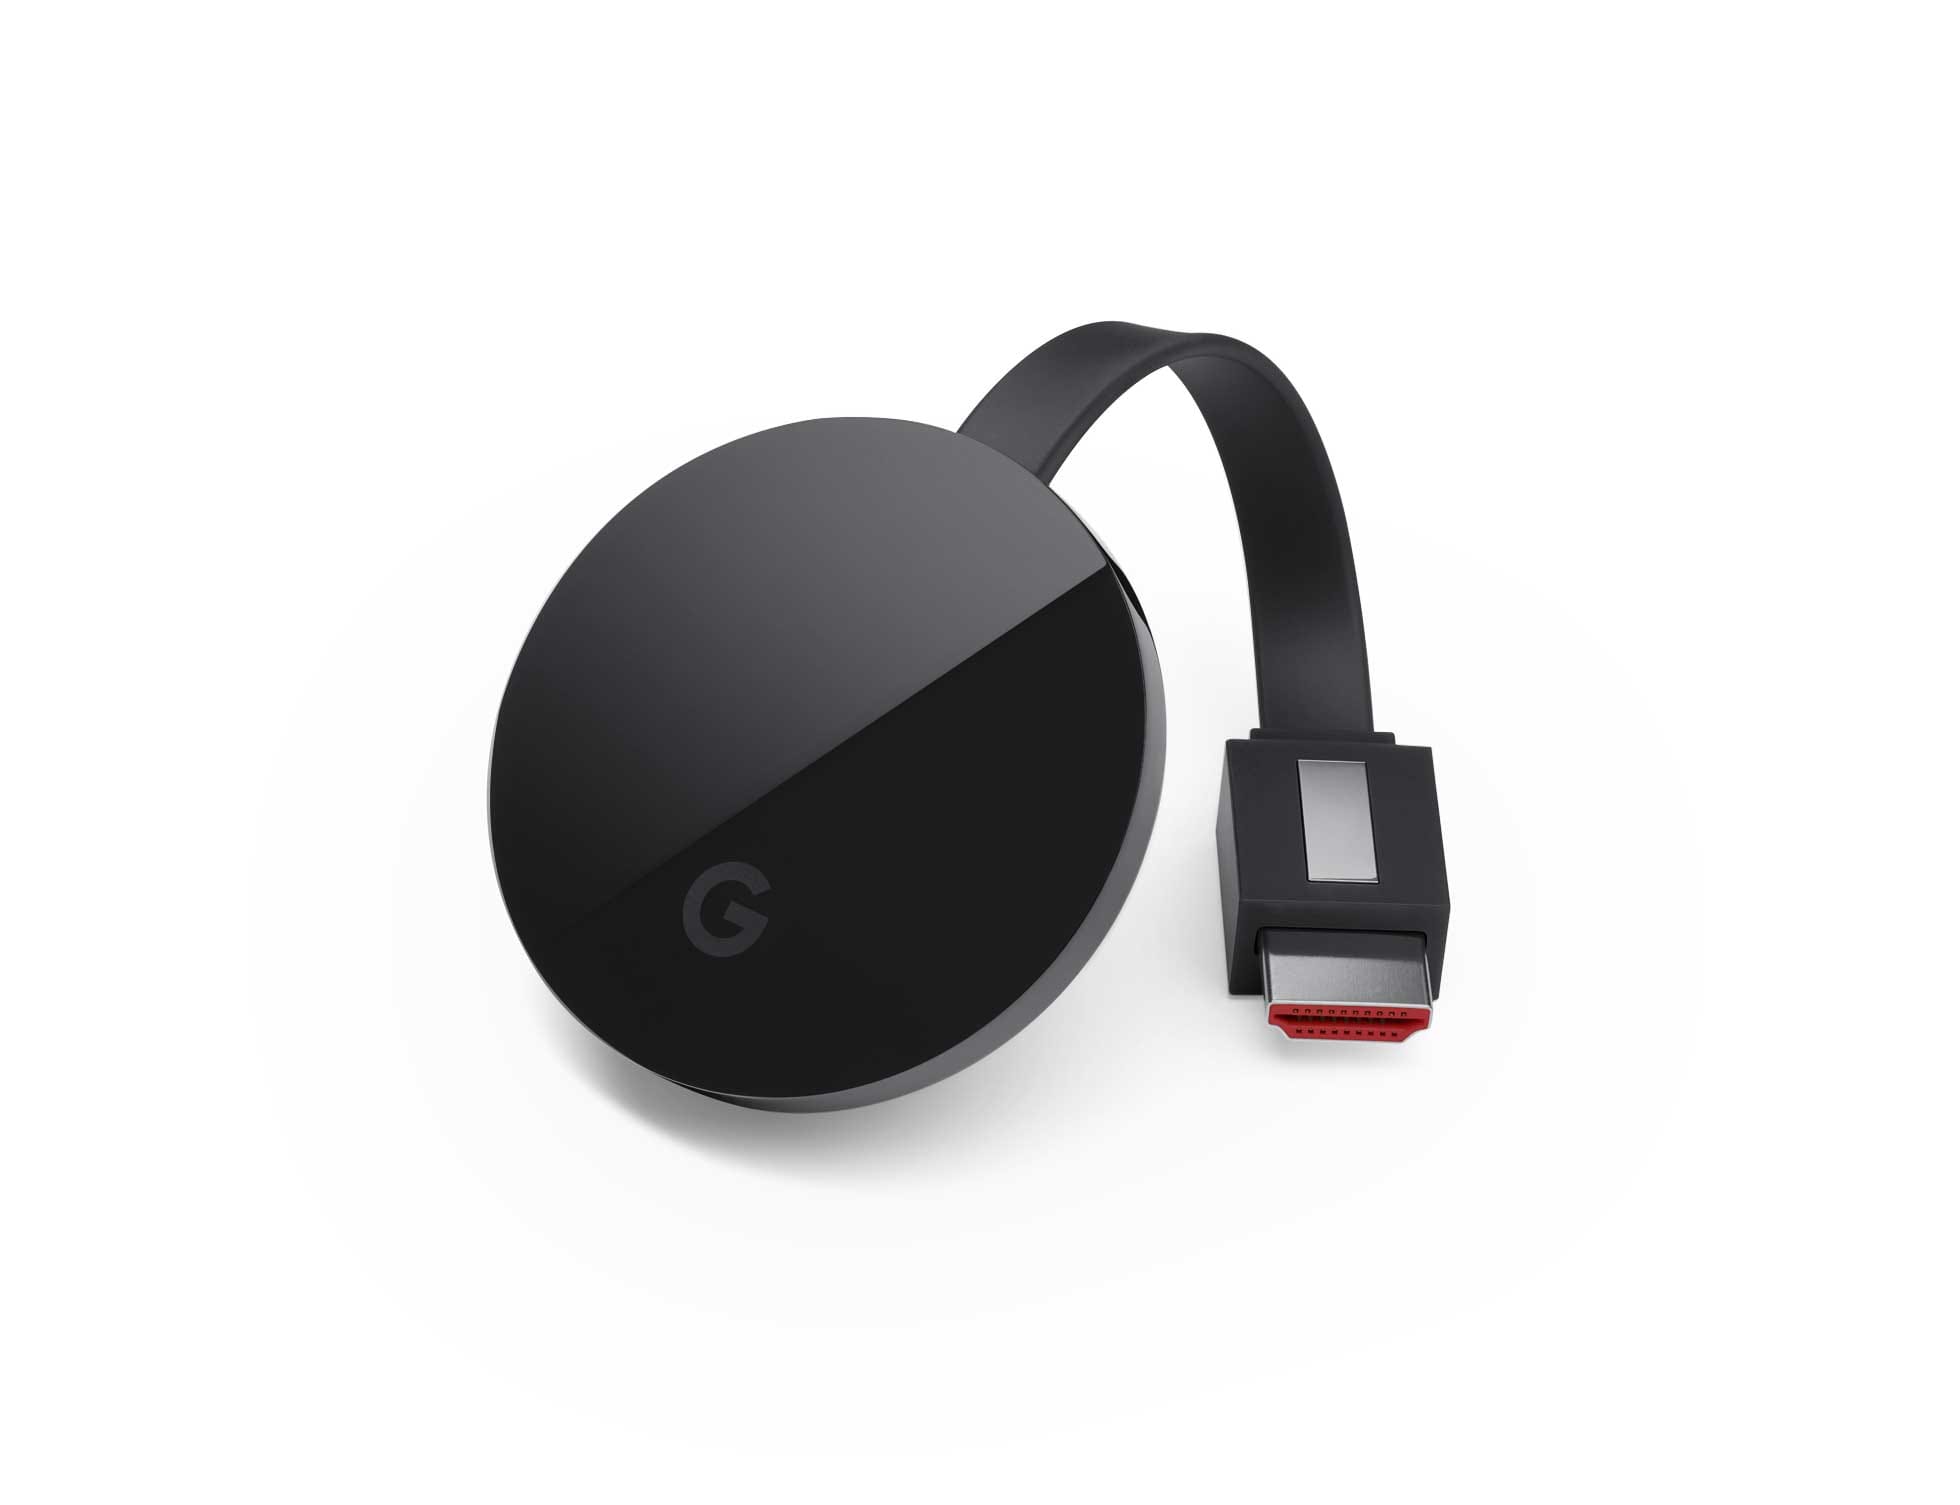 Google Chromecast con Google TV, Guía de seguridad y privacidad